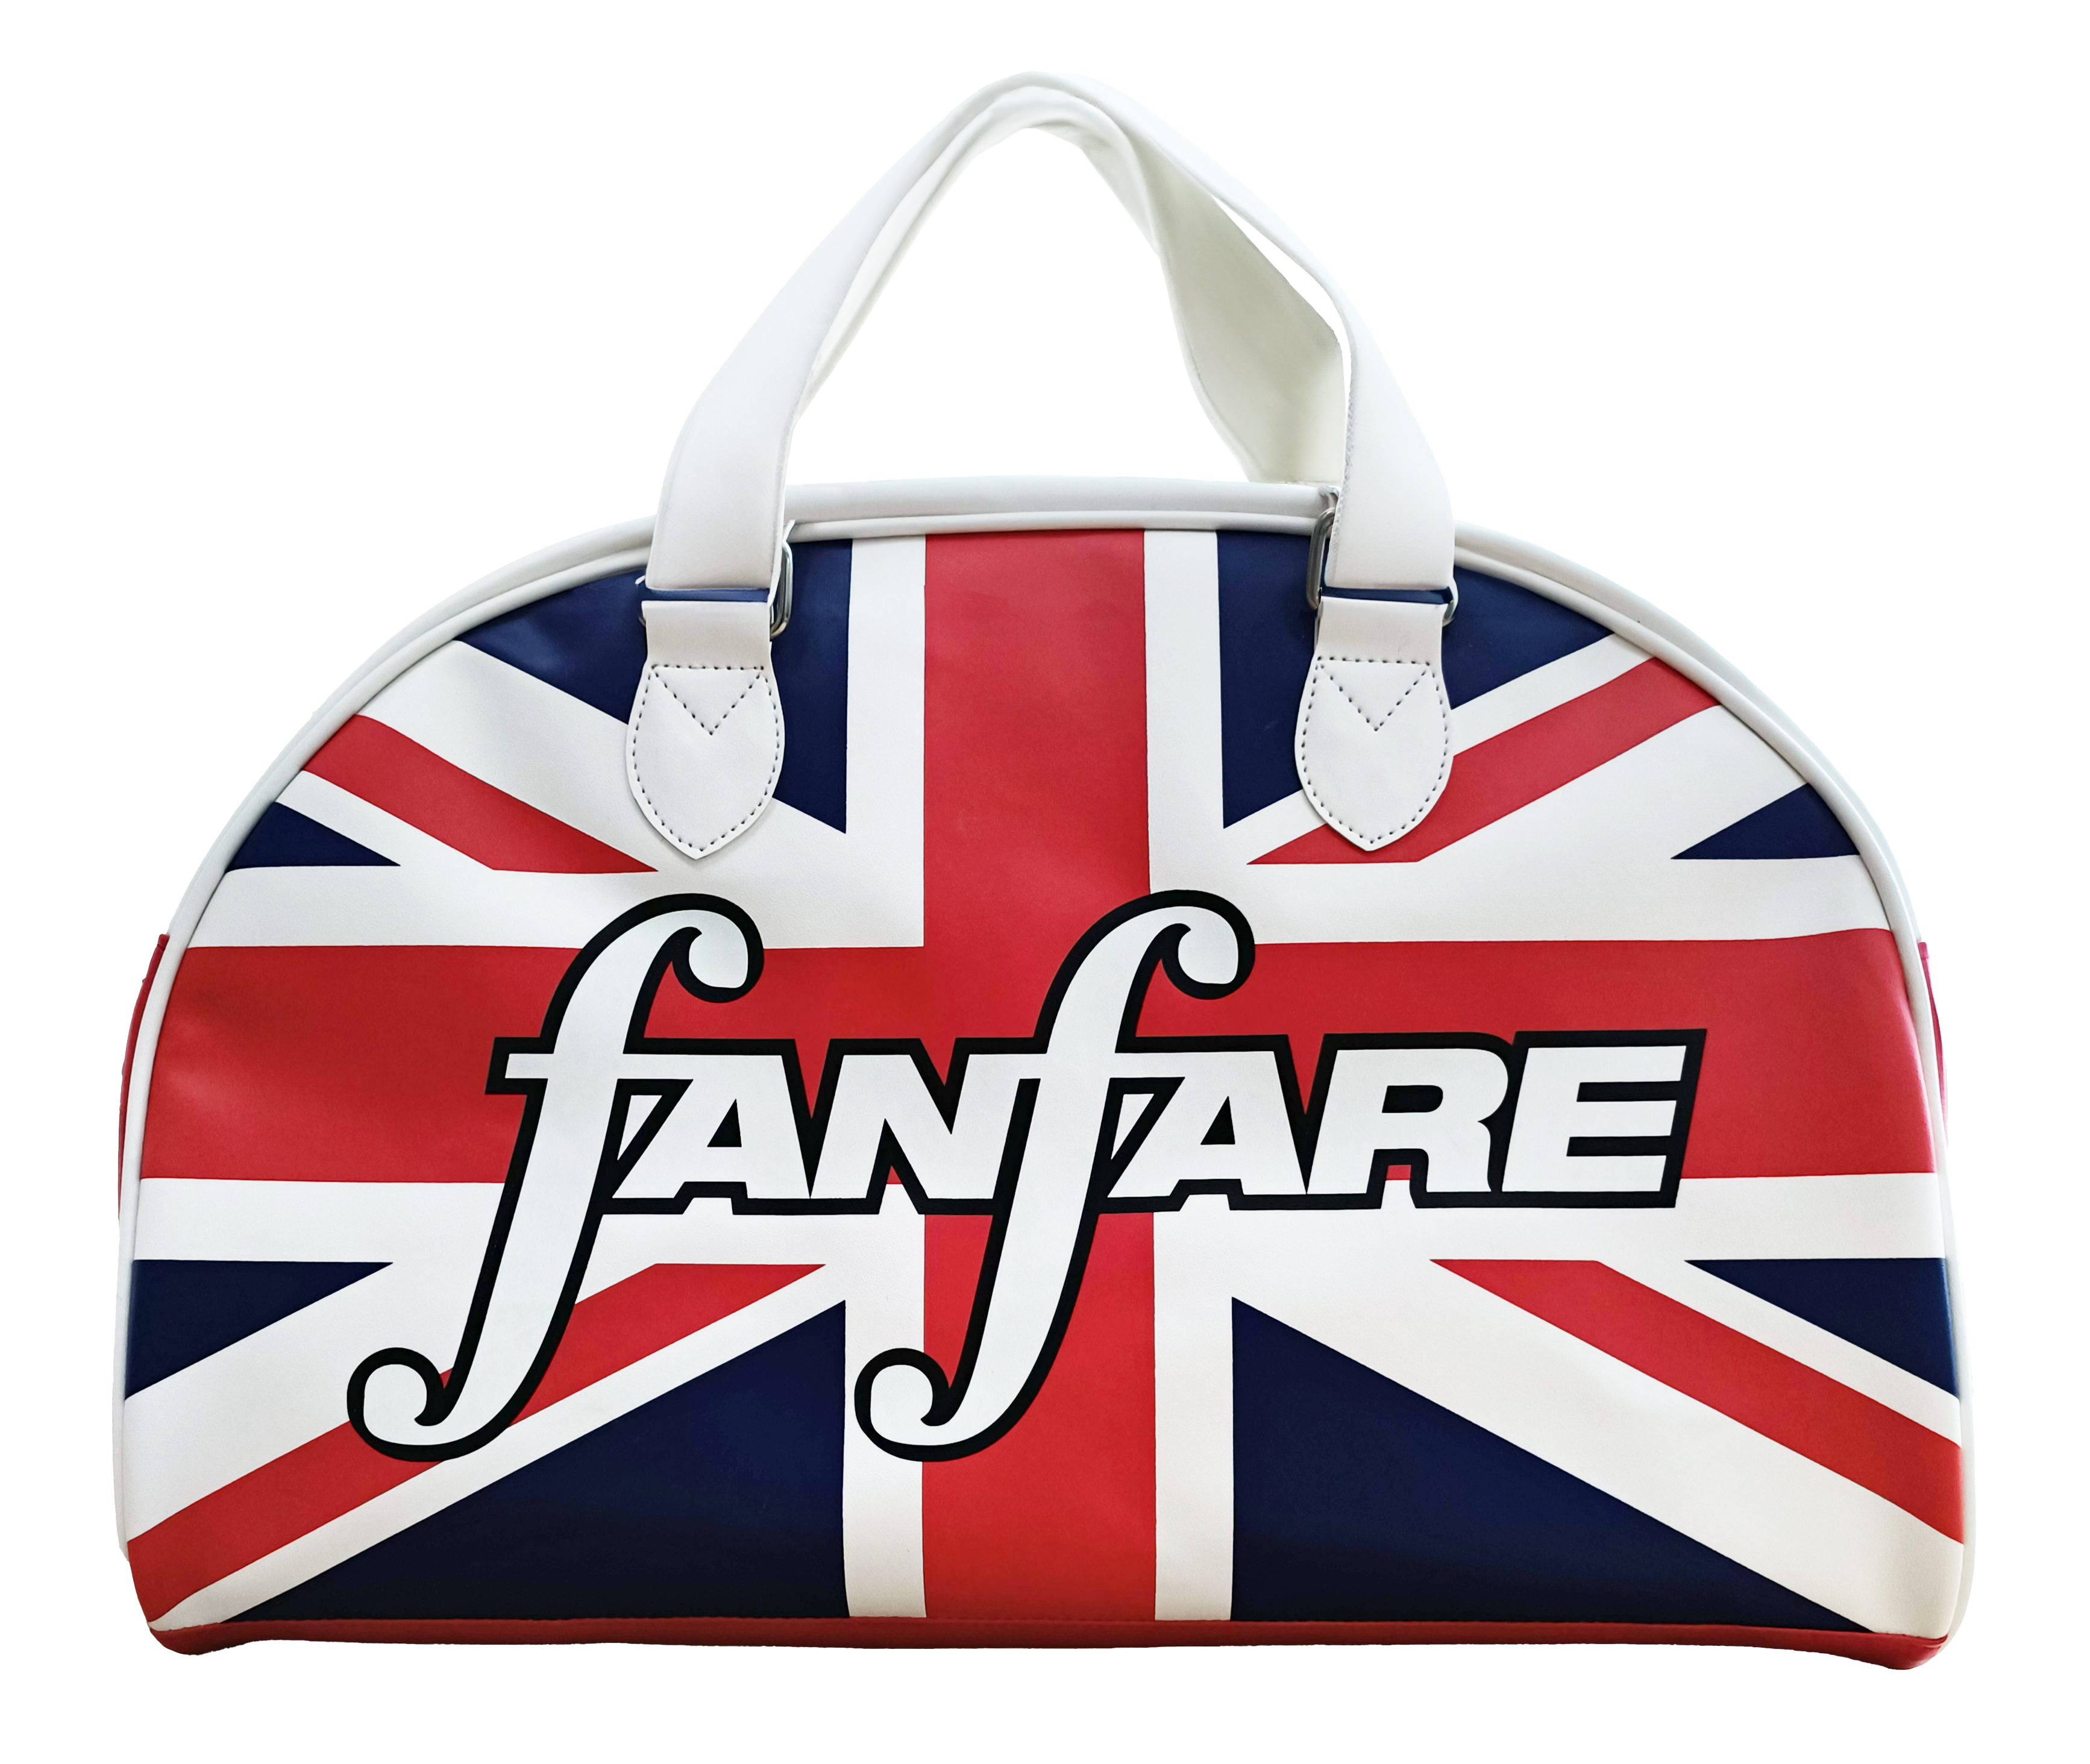 Fanfare Union Jack Bag